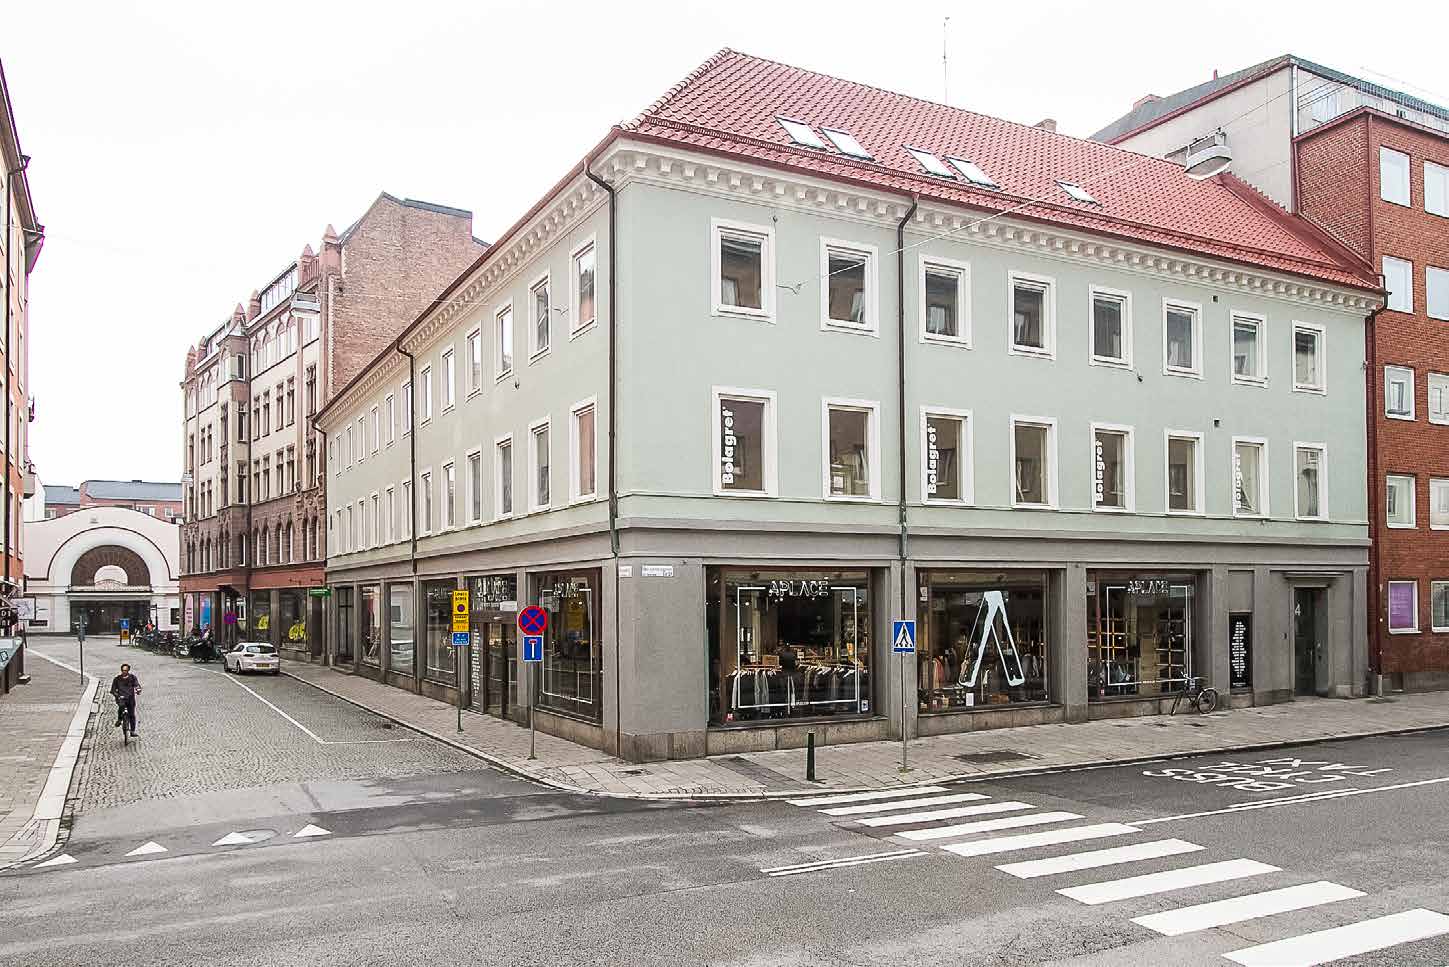 Tidstypisk charm mitt i centrum Björnen 1 är en vacker byggnad från början av 1900-talet. Arkitekturen är tidstypisk och mycket dekorerad. Fastigheten erbjuder både handel, kontor och kontorshotell.